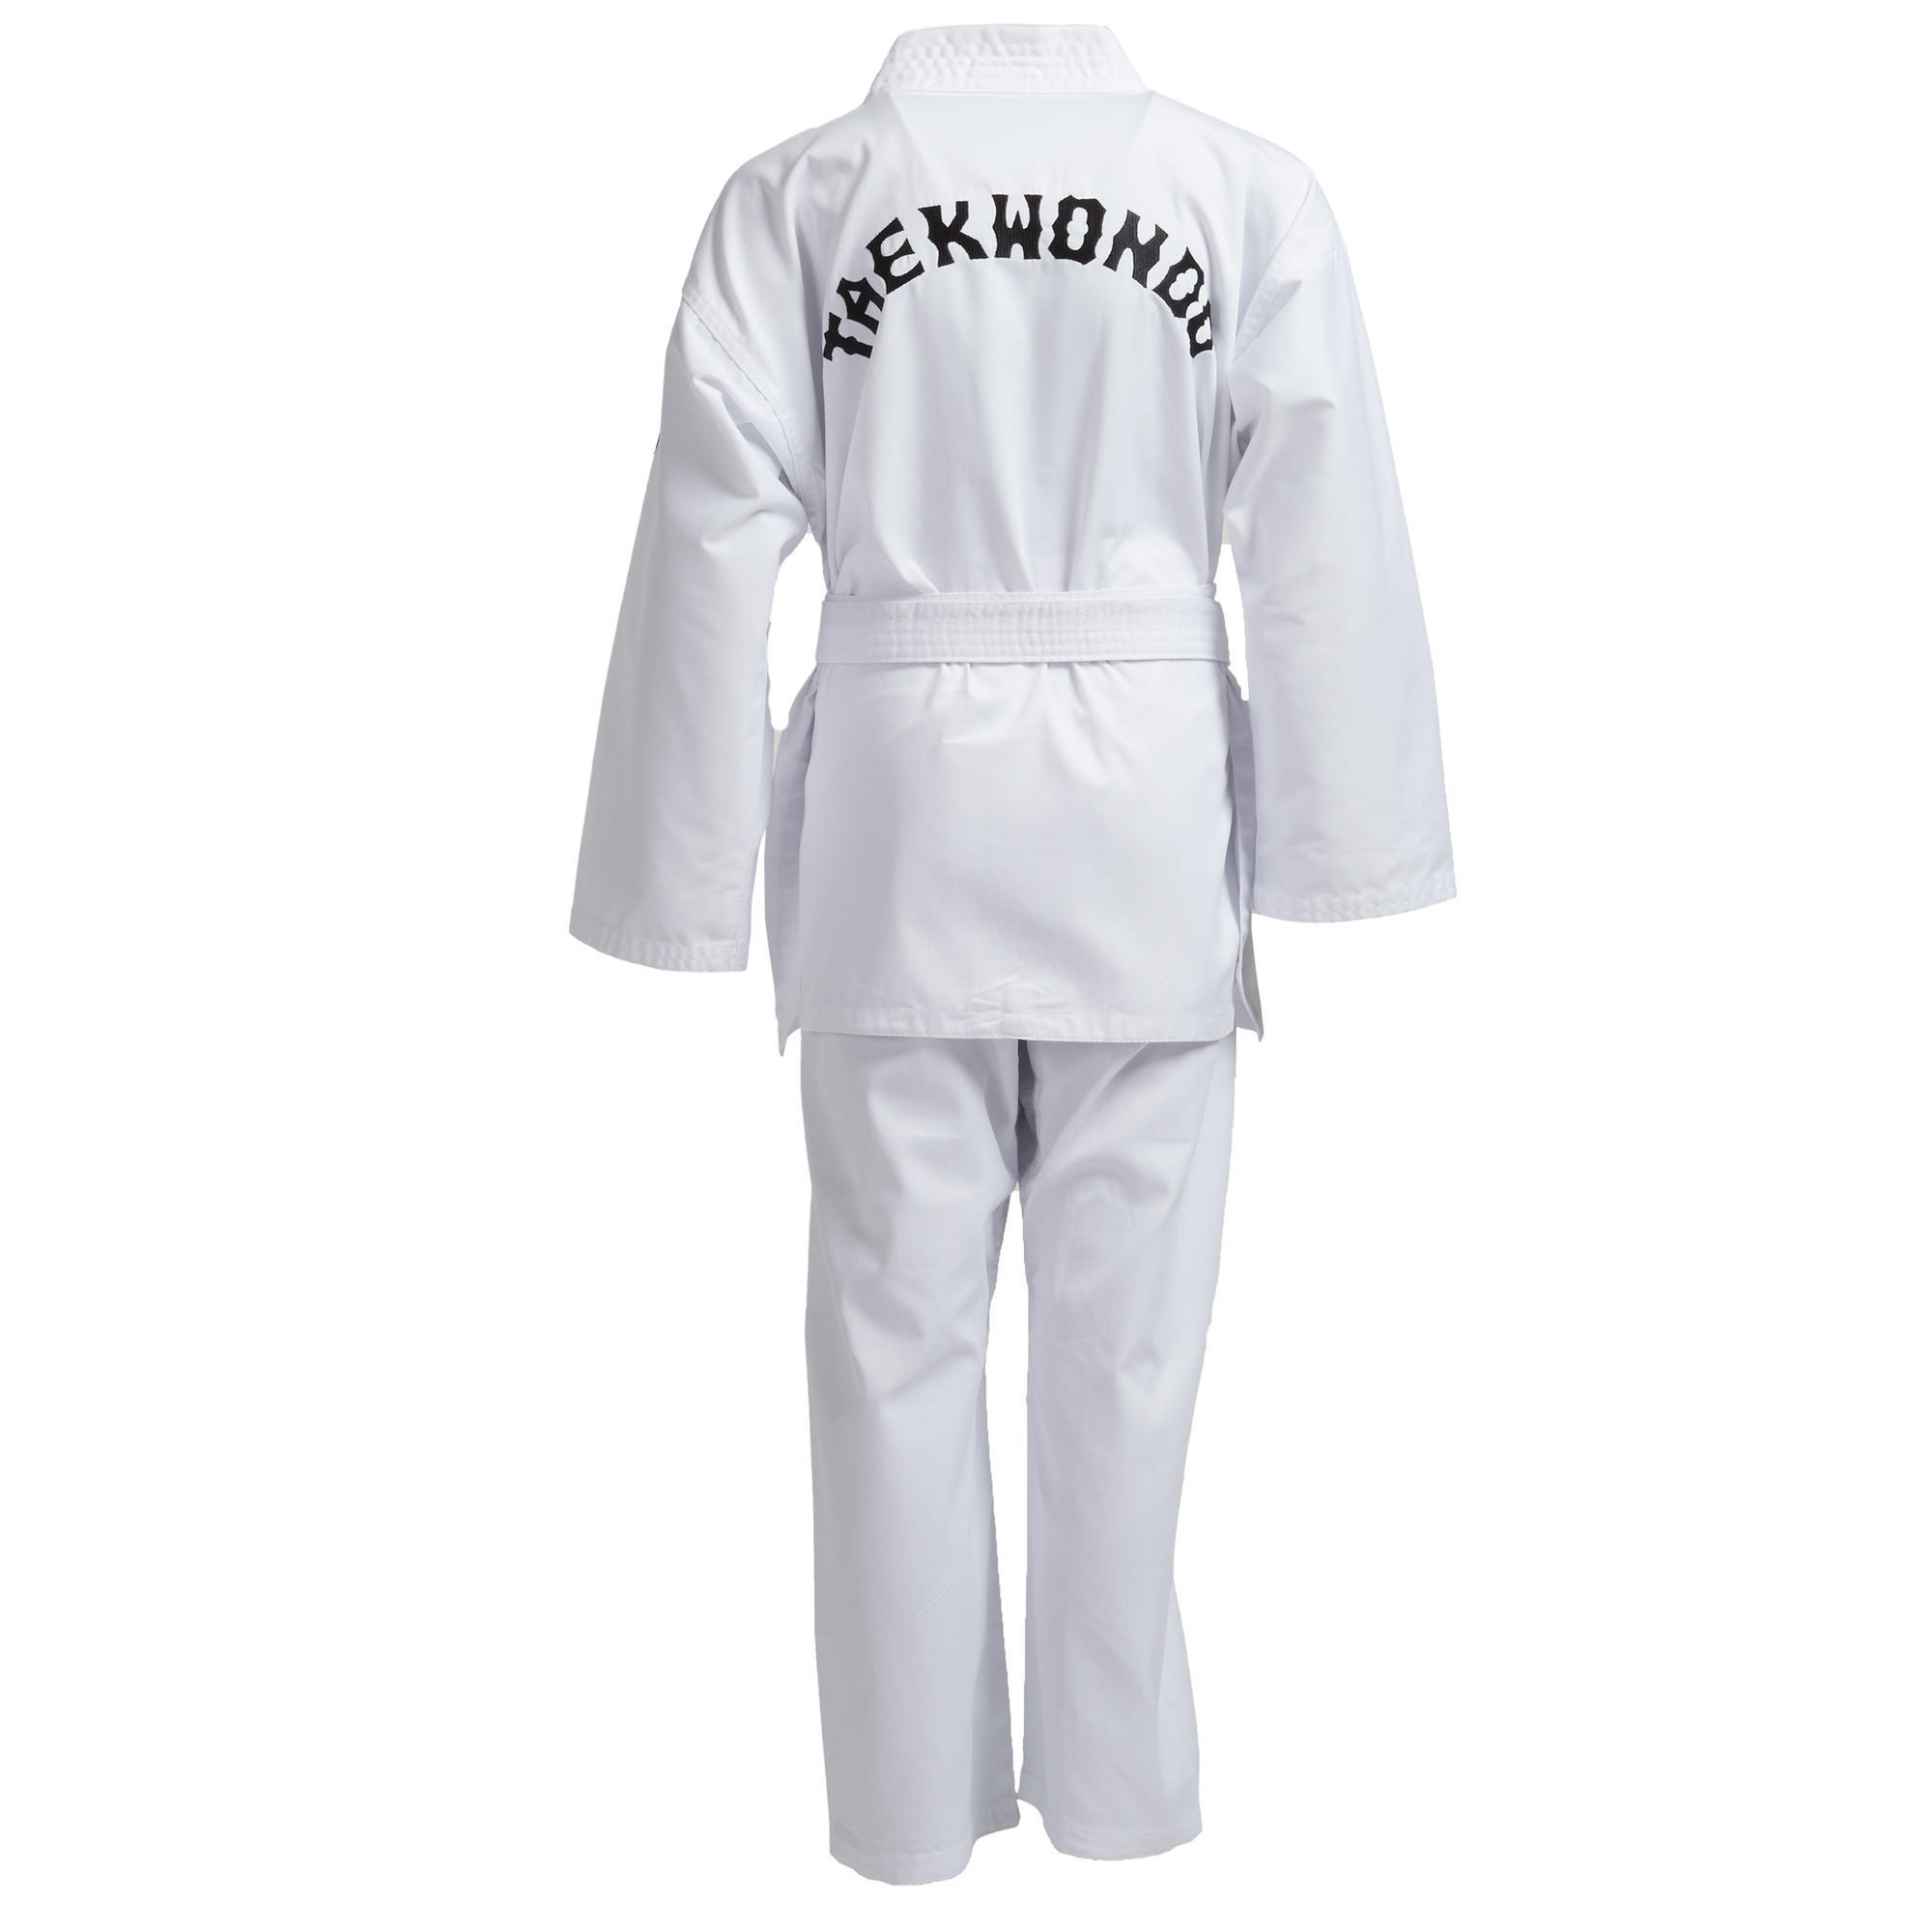 Kids' Taekwondo Dobok Uniform - White 